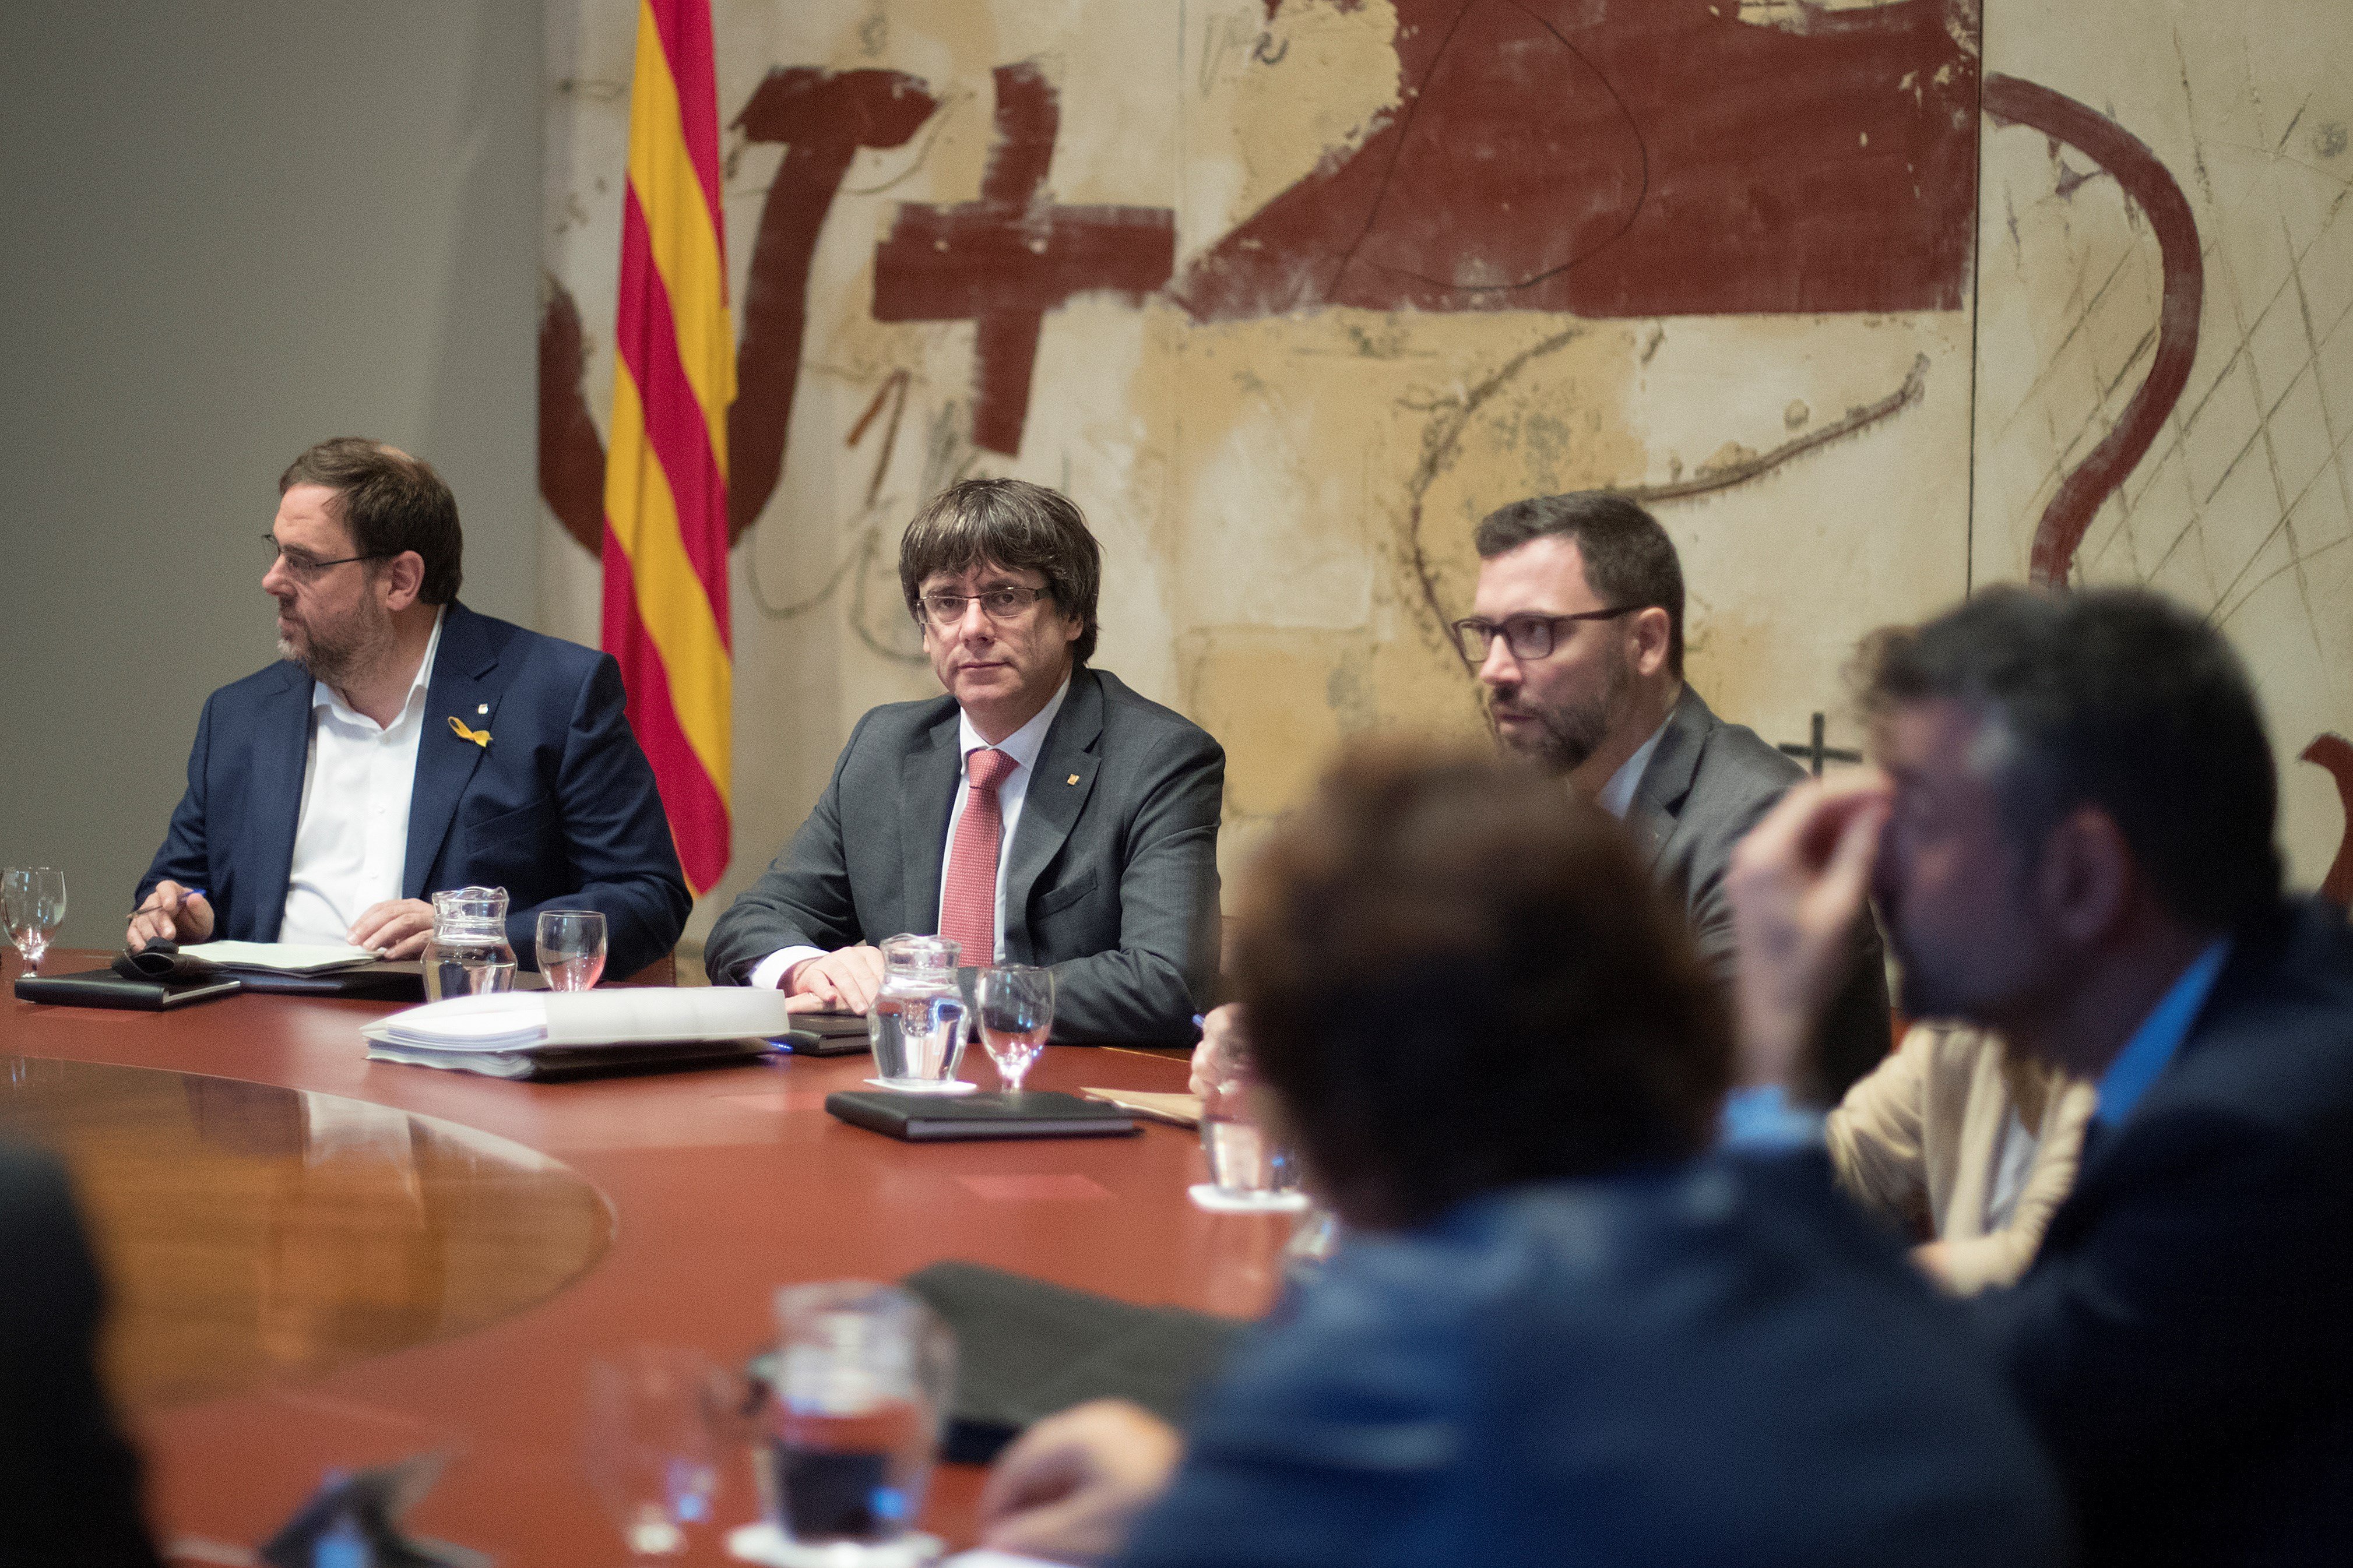 Els consellers d'ERC i alguns del PDeCAT desaconsellen eleccions a Puigdemont